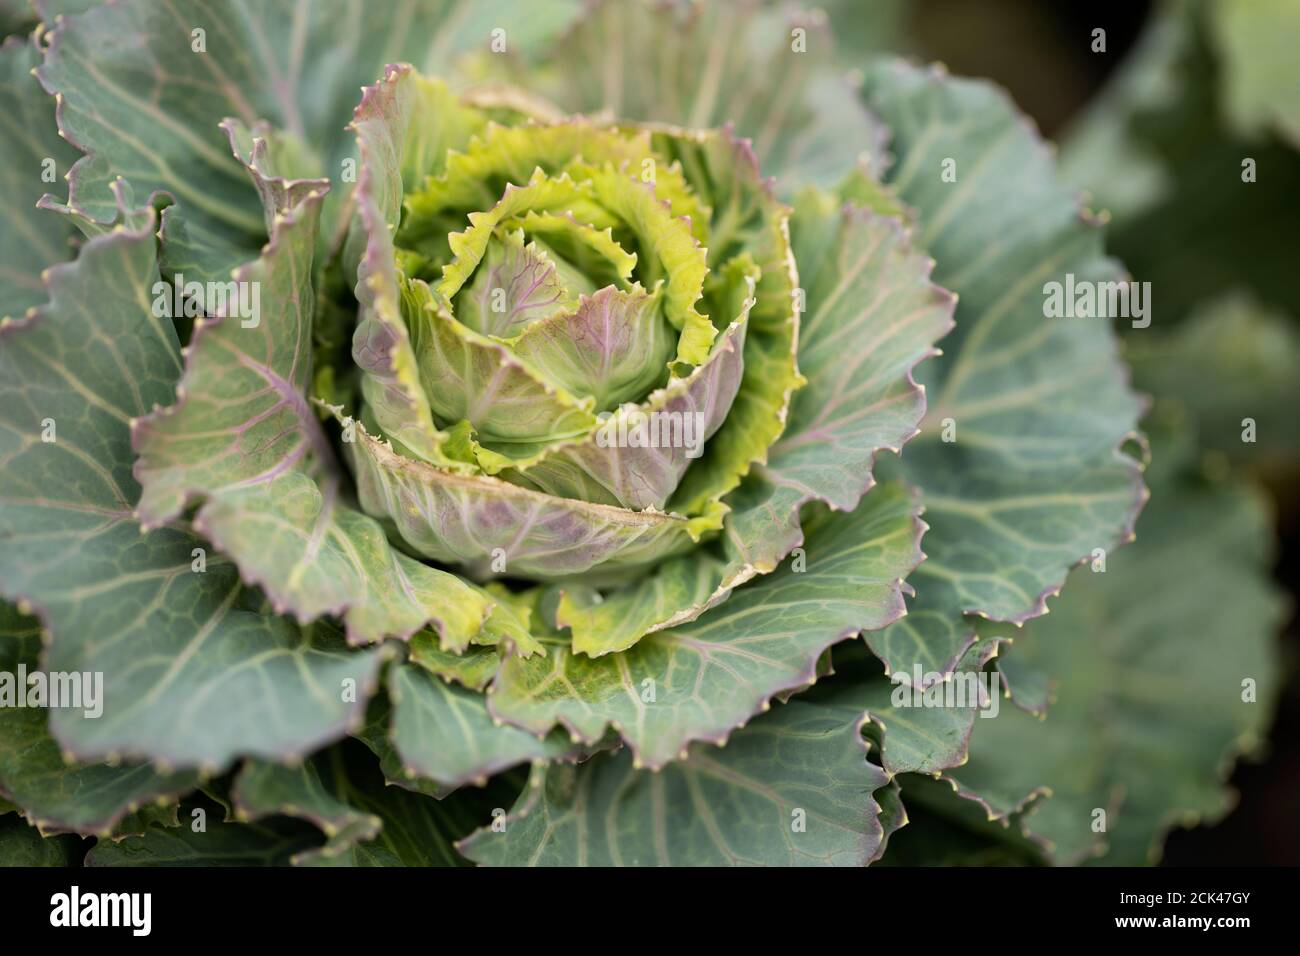 Kale ornamentale fiorito (Brassica oleracea) in varietà Pigeon Victoria Pink, che cresce in un giardino ad Acton, Massachusetts. Foto Stock